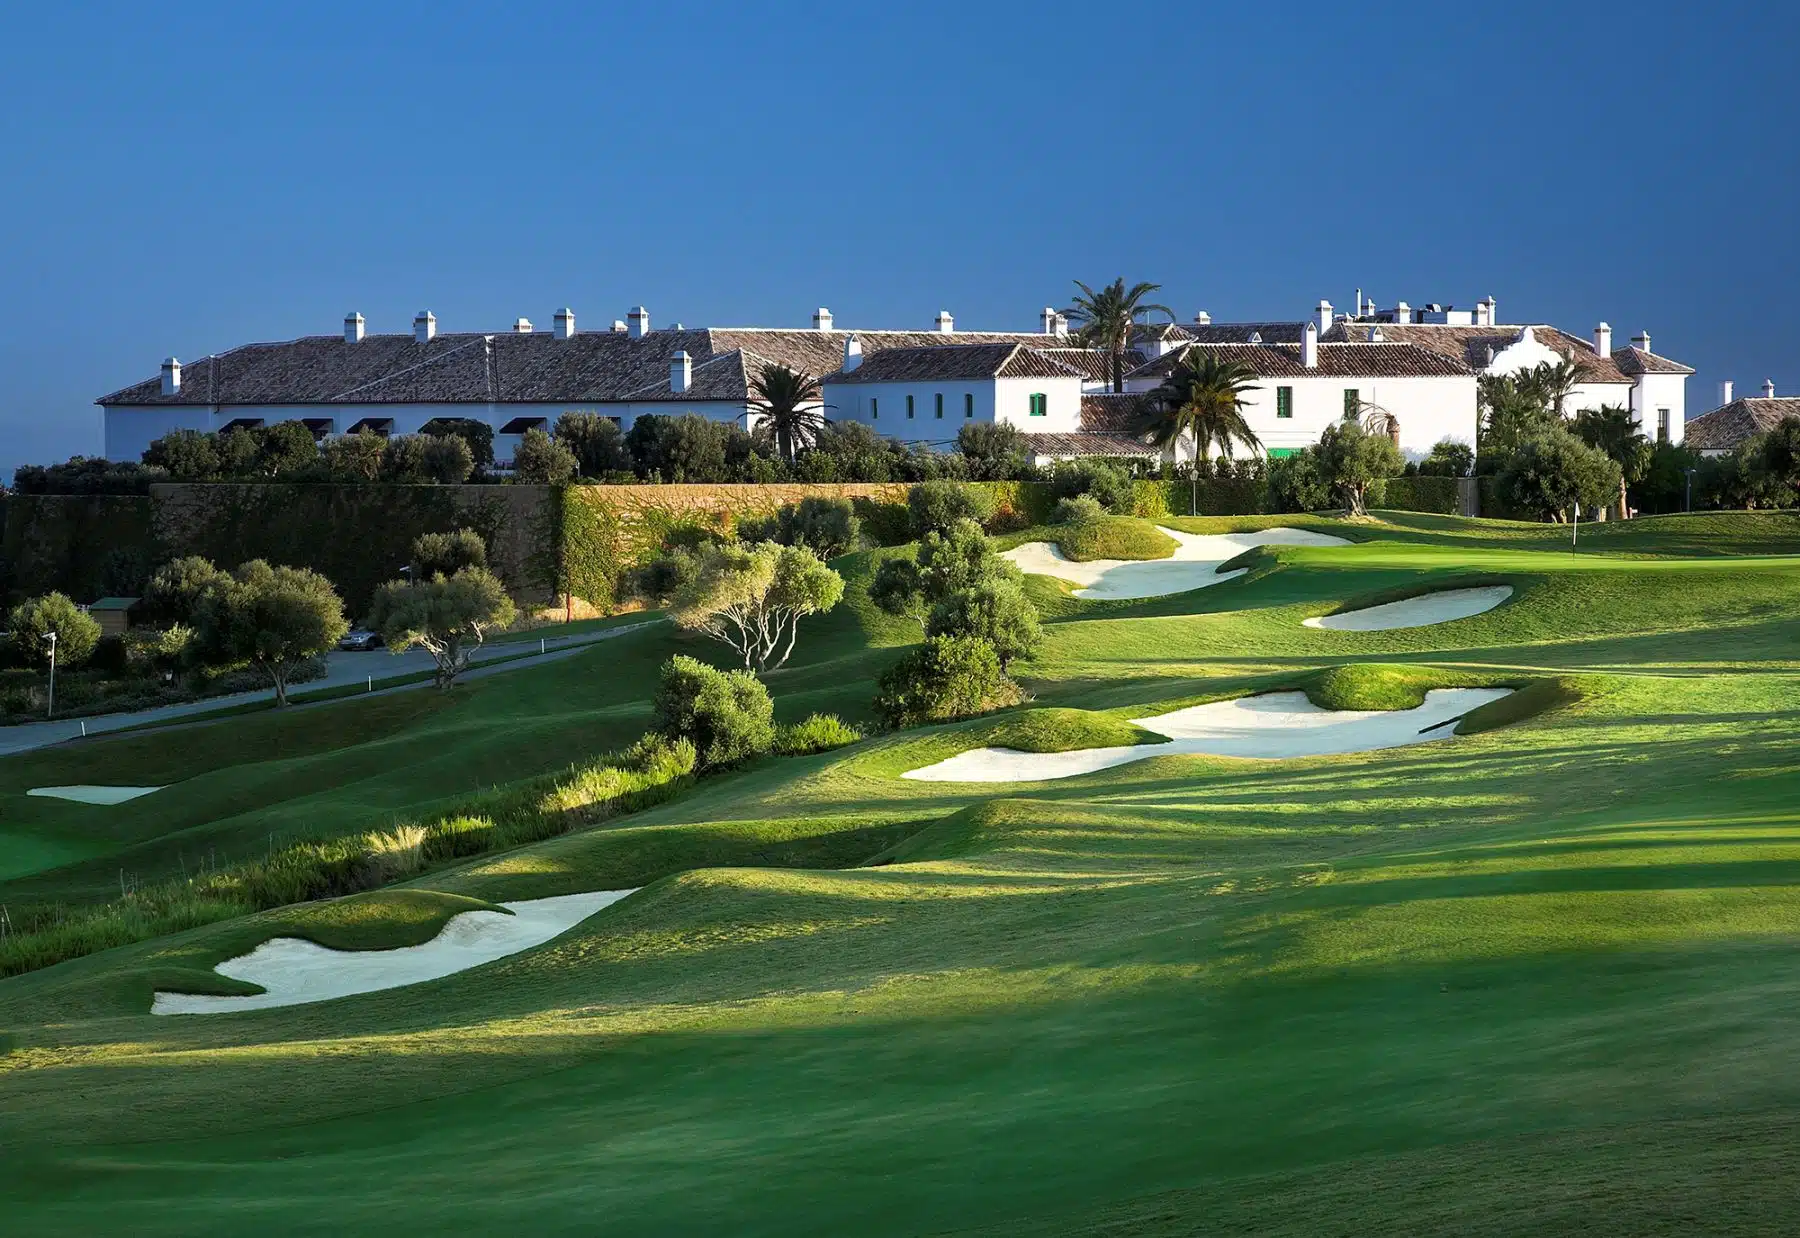 Die Finca Cortesin gehört zu den besten Golfhotels und Golfresorts in Europa